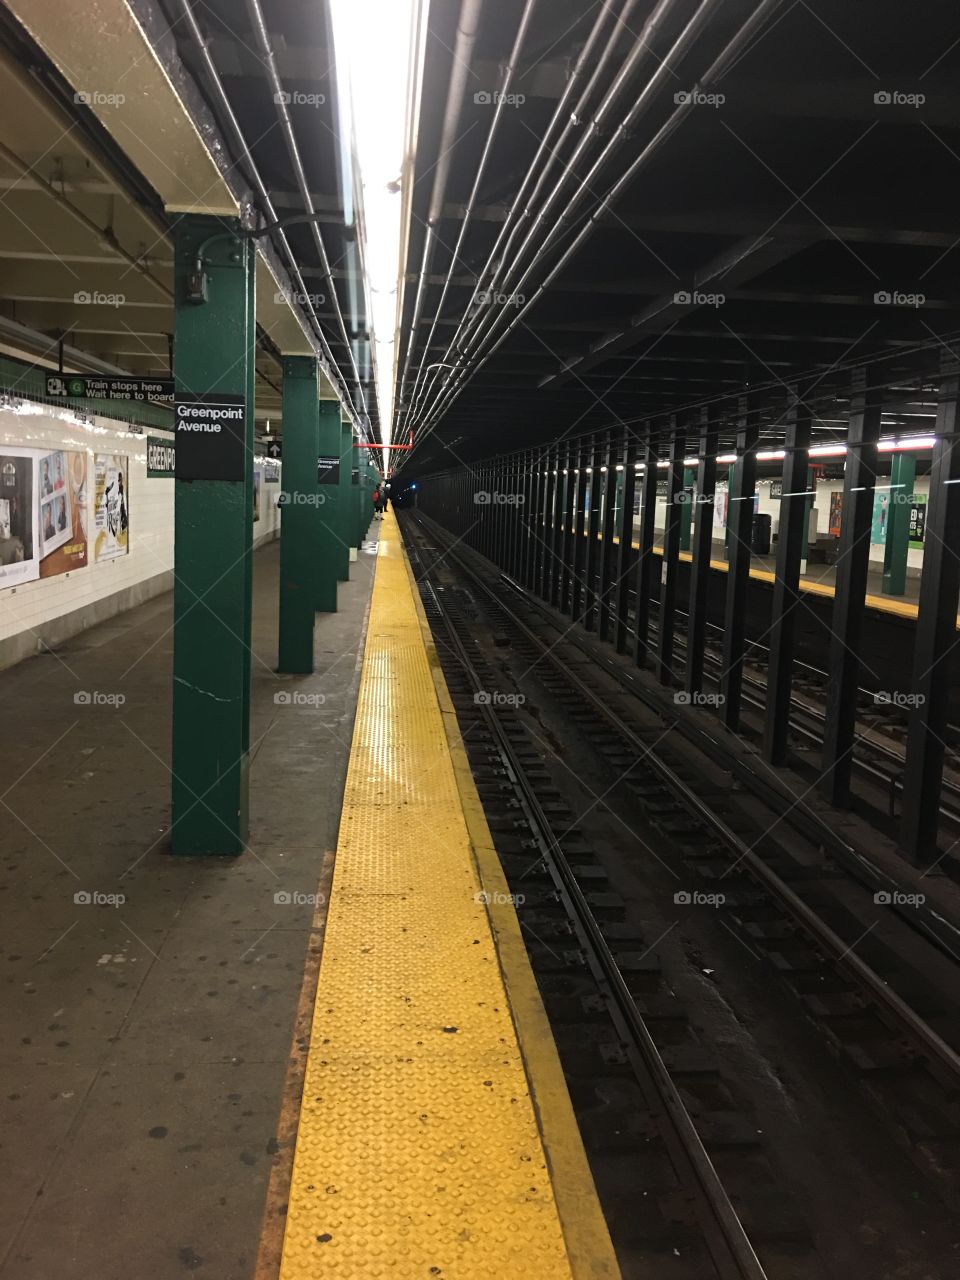 Subway
NYC